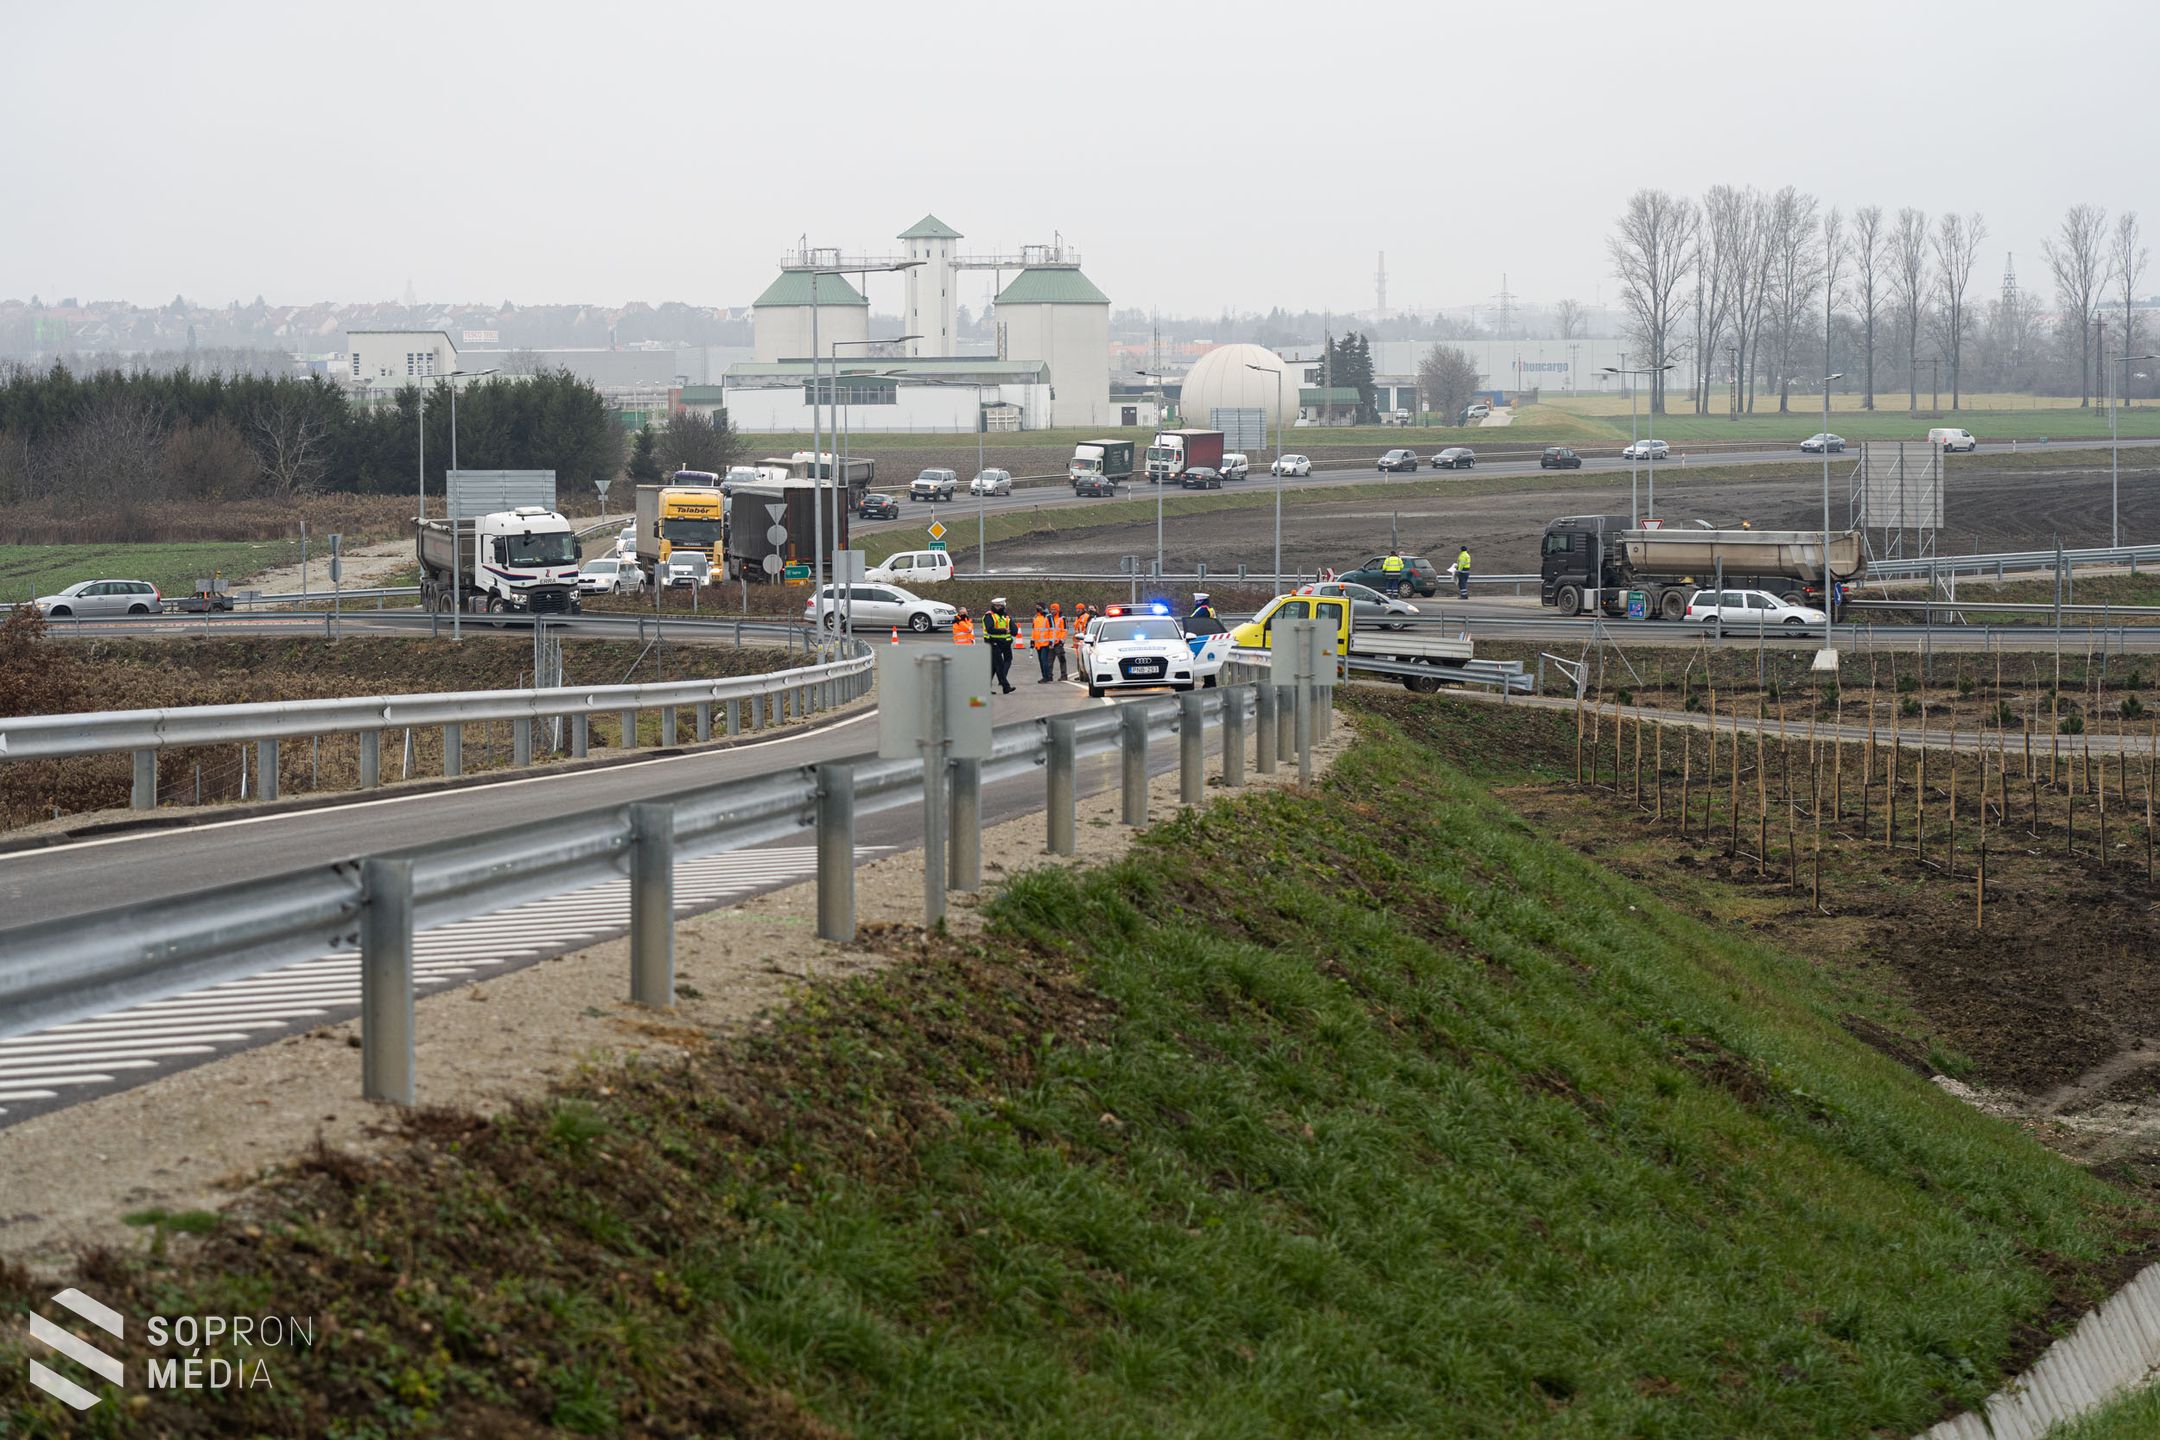 Elkészült az M85-ös gyorsforgalmi út Sopron és Csorna közötti szakasza